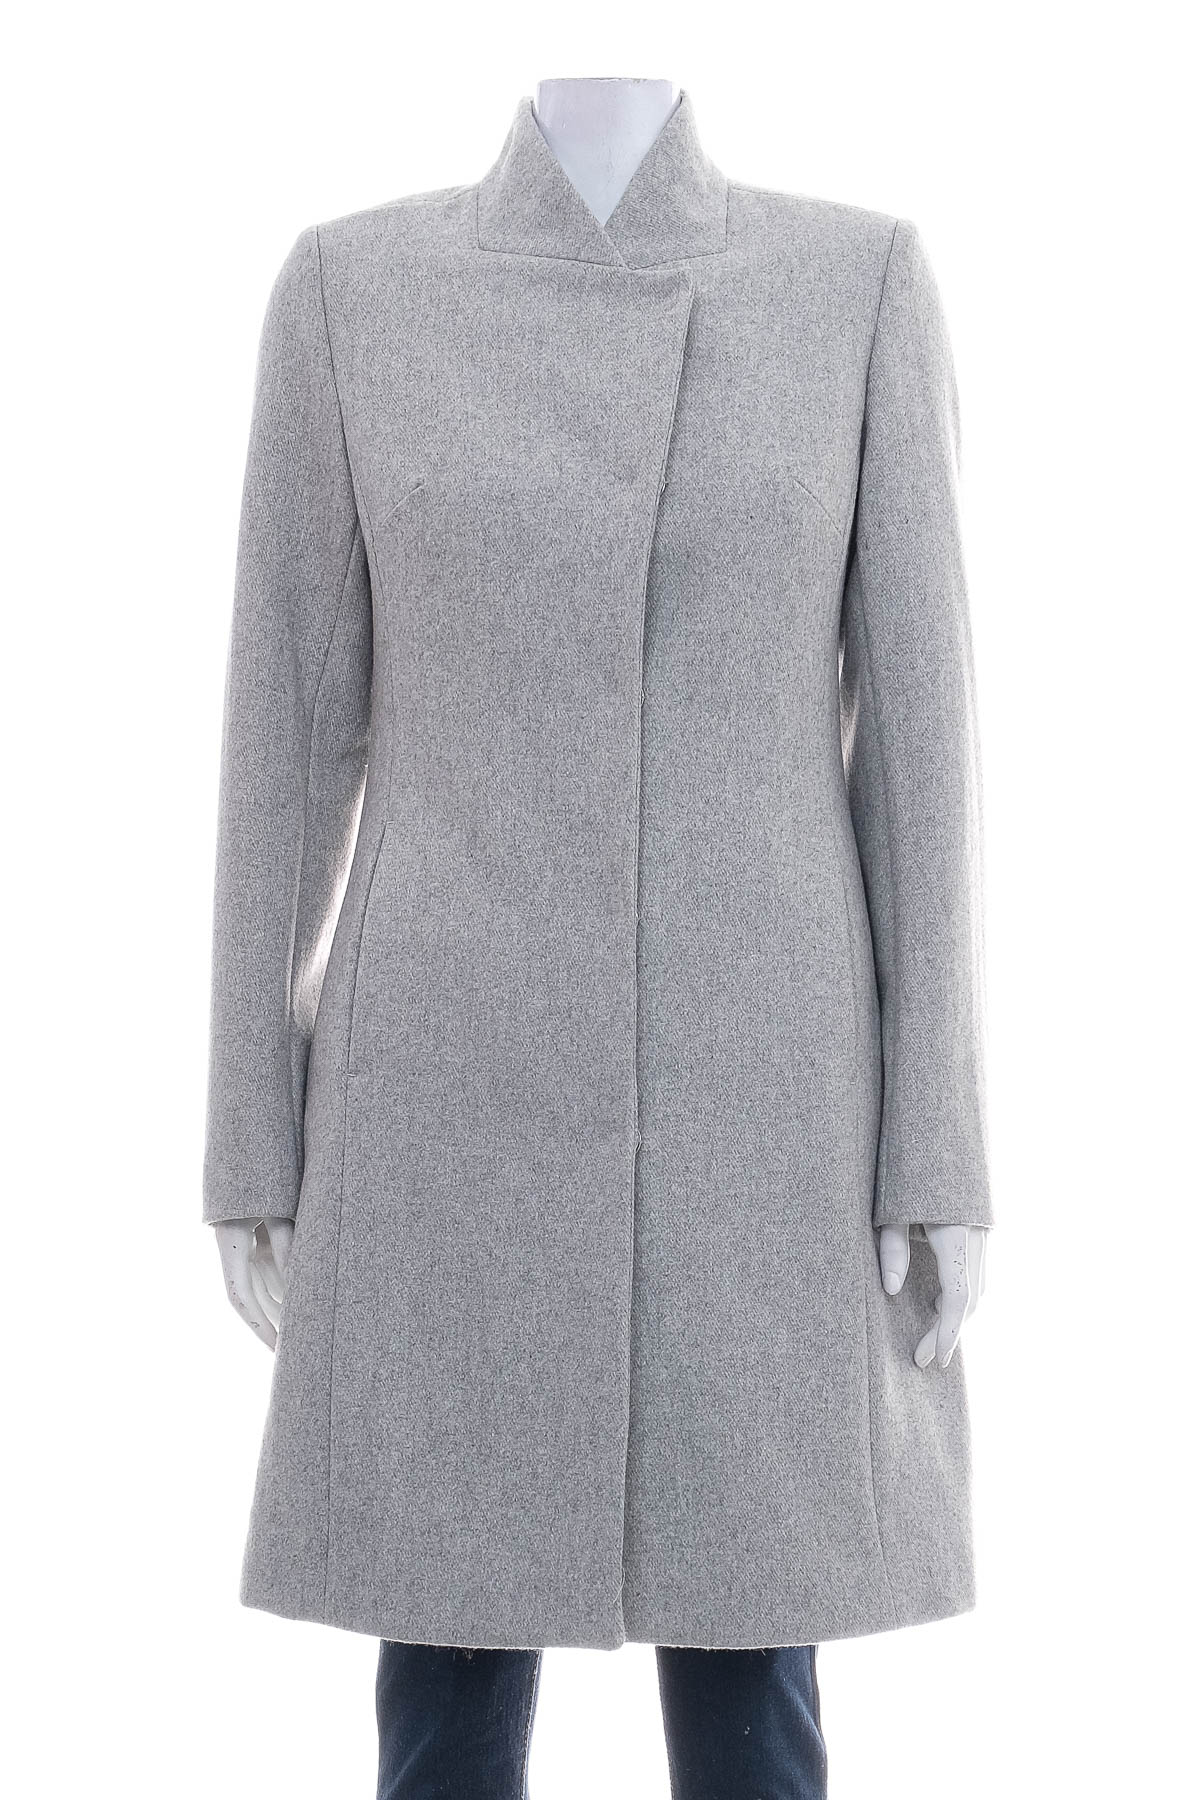 Women's coat - RESERVED - 0